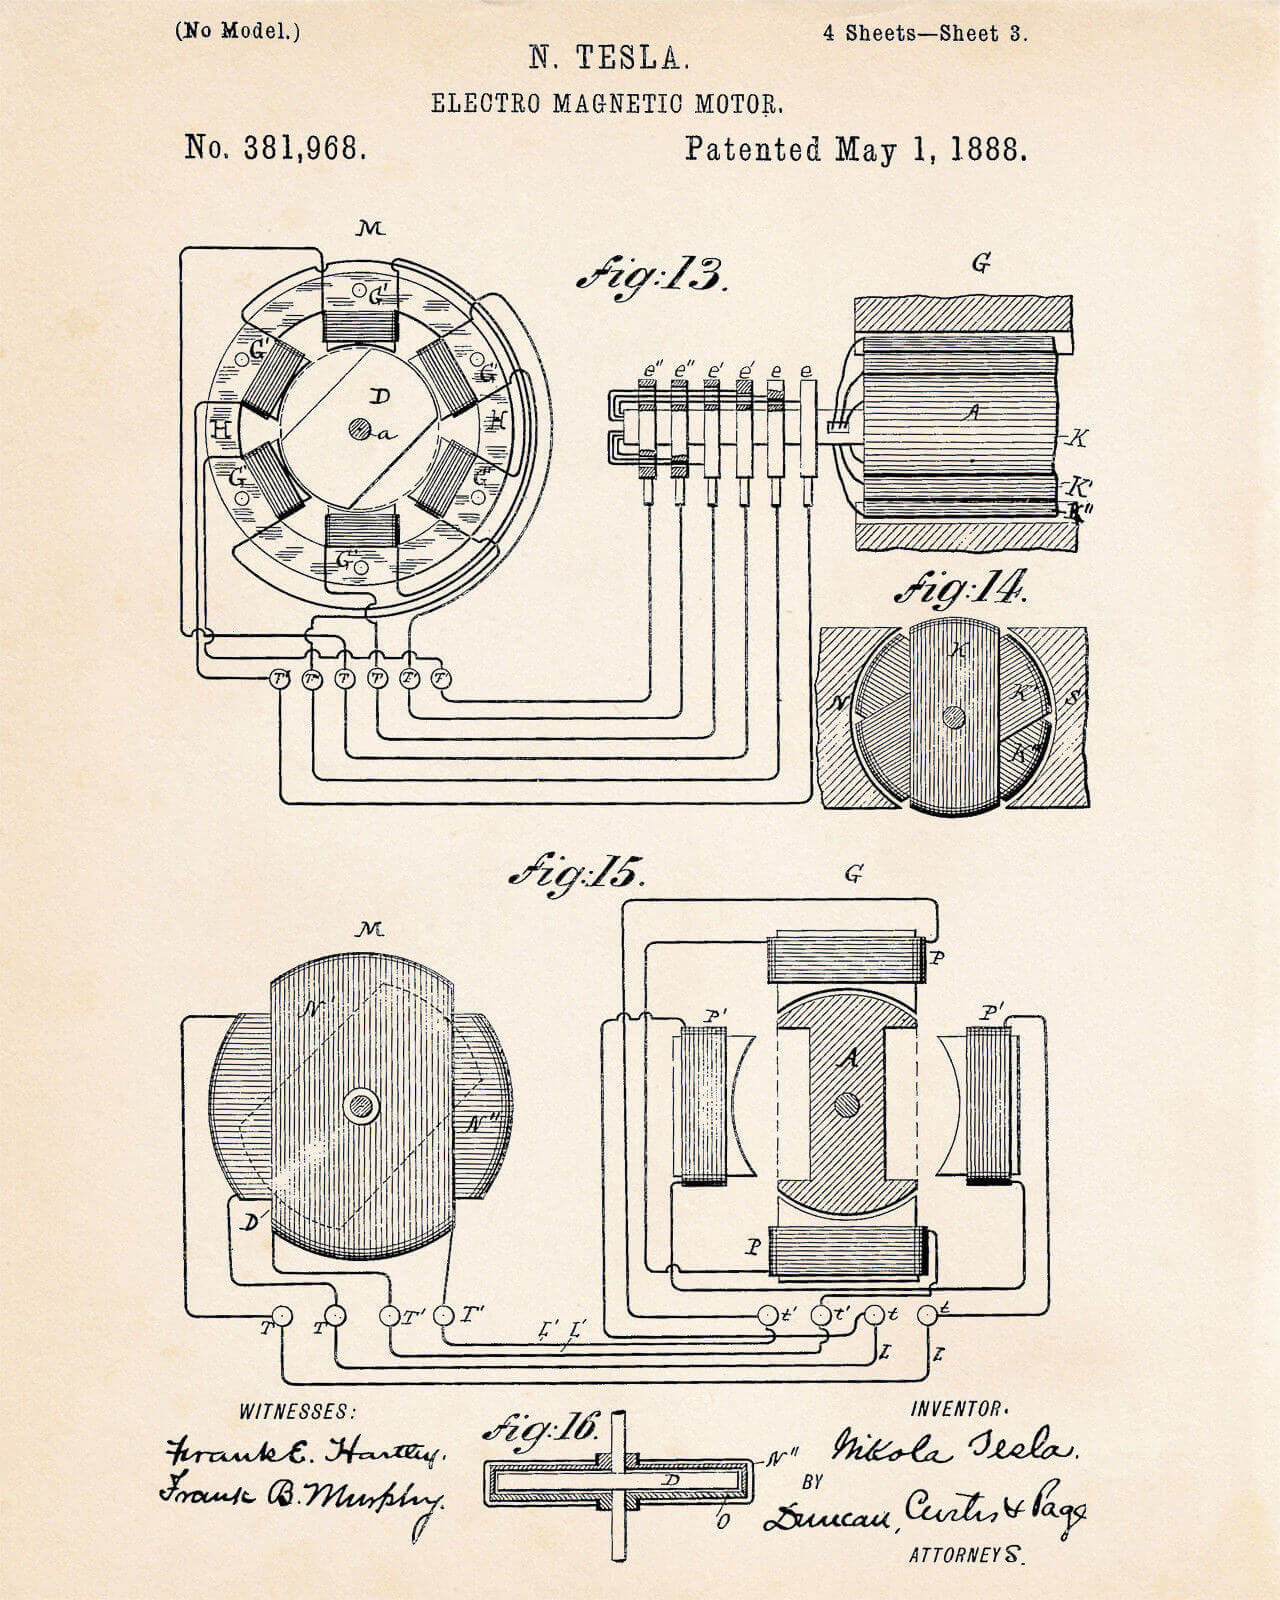 Nikola Tesla's electro magnetic motor patent